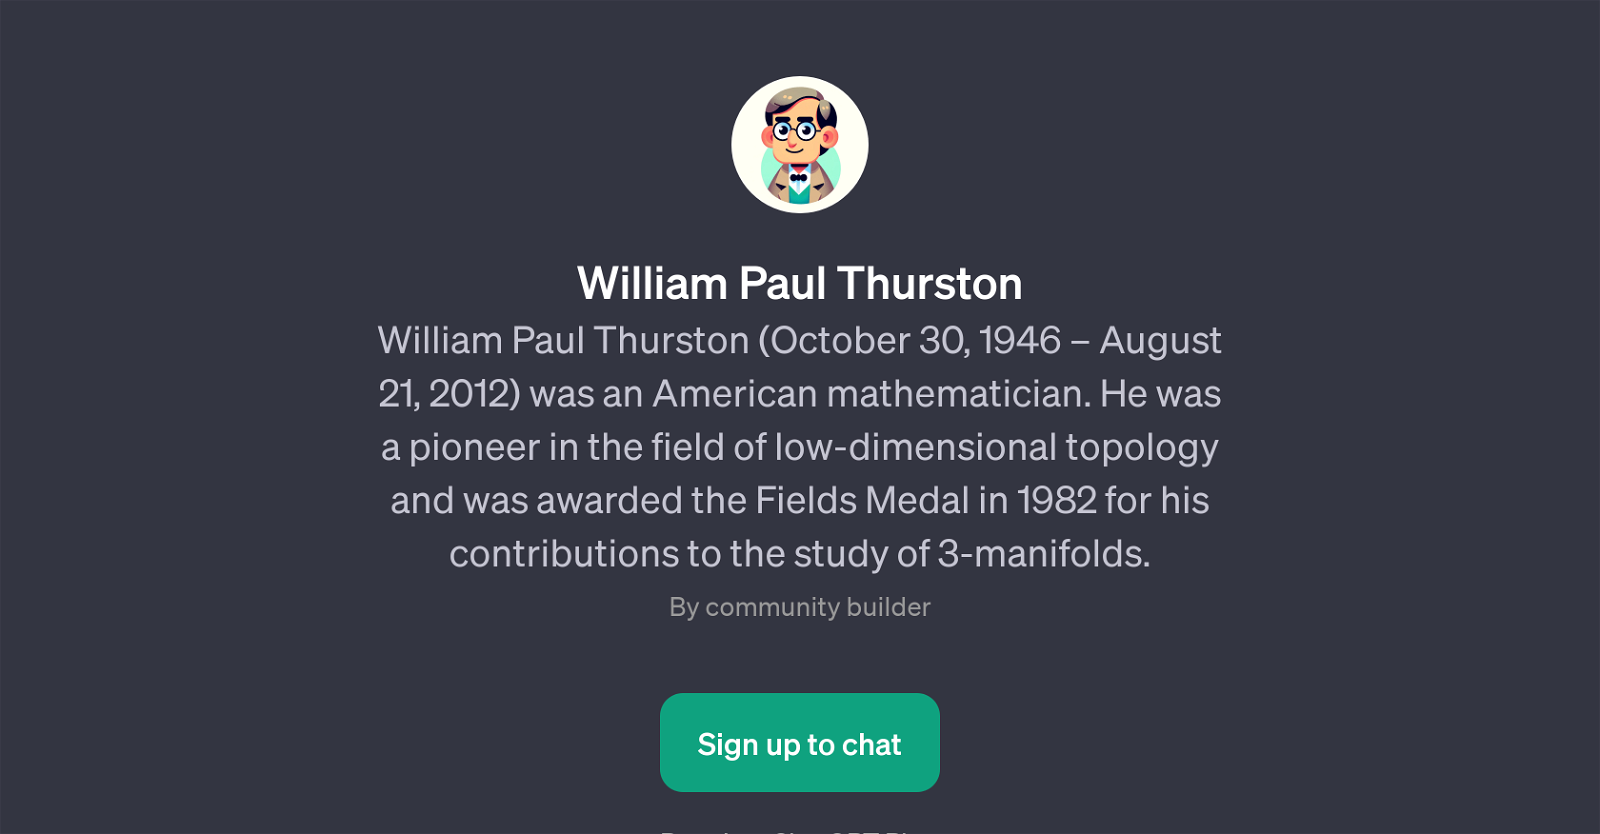 William Paul Thurston website